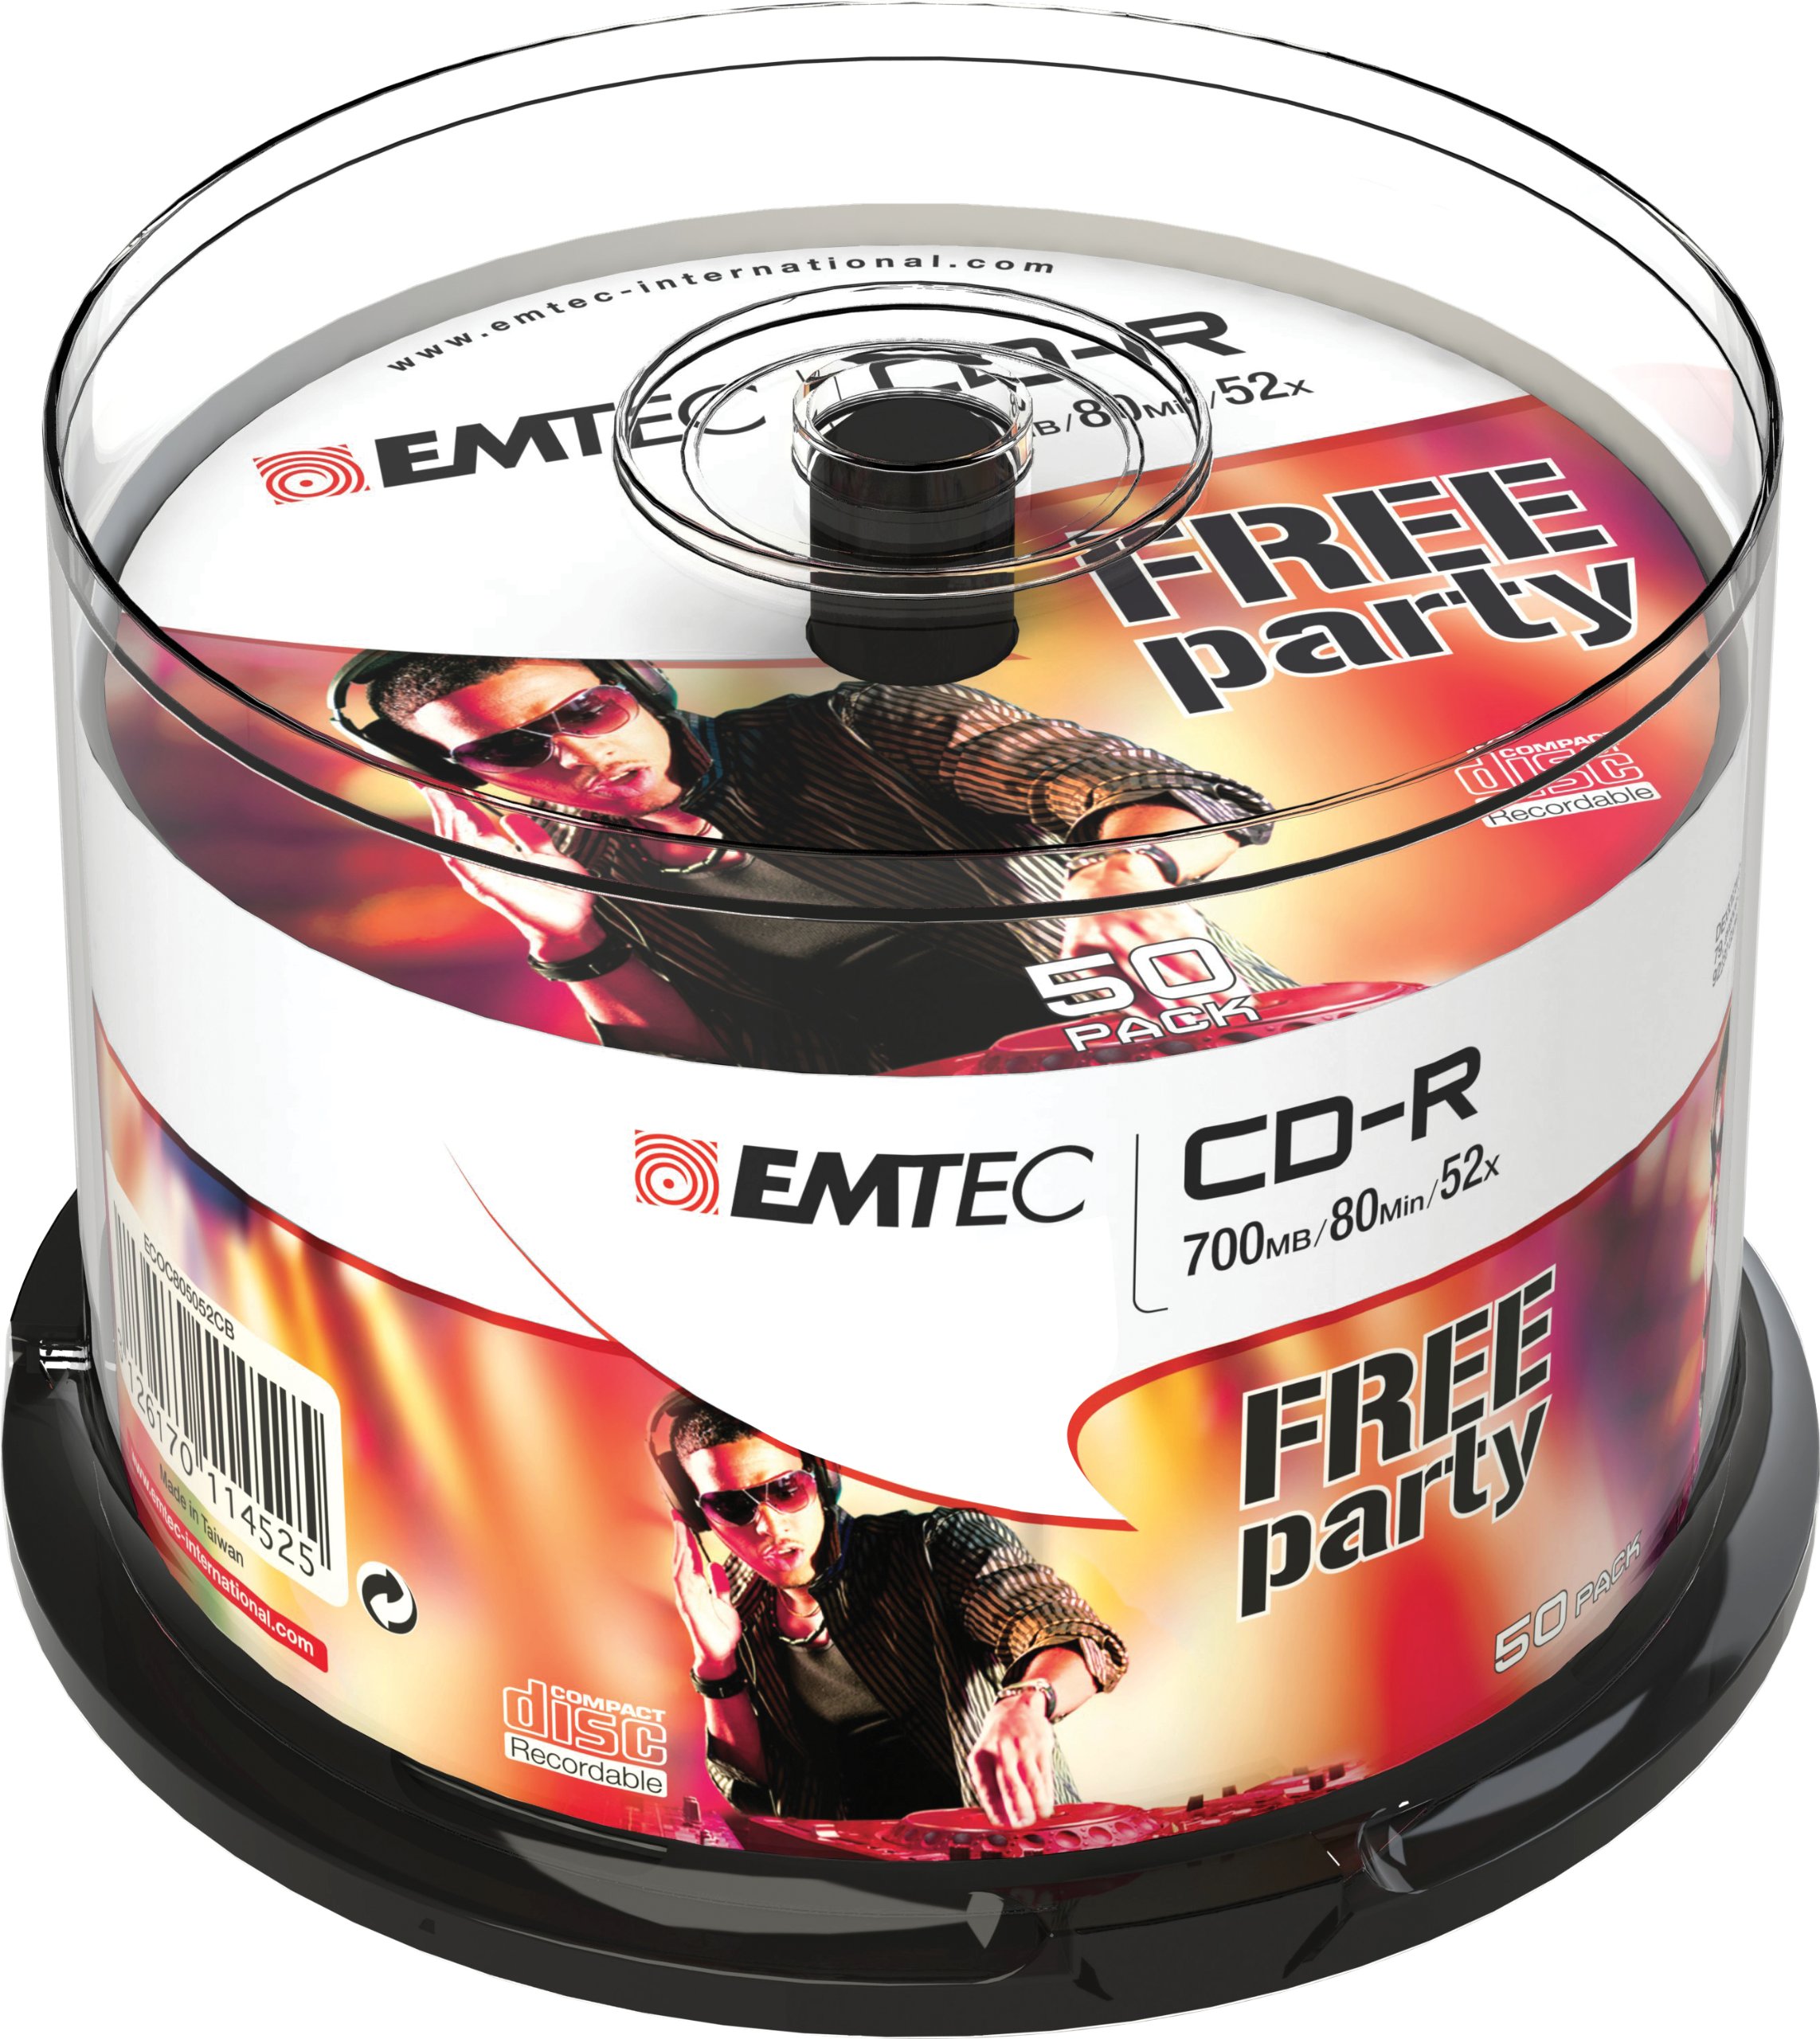 Emtec - CD-R - ECOC805052CB - 80min/700mb